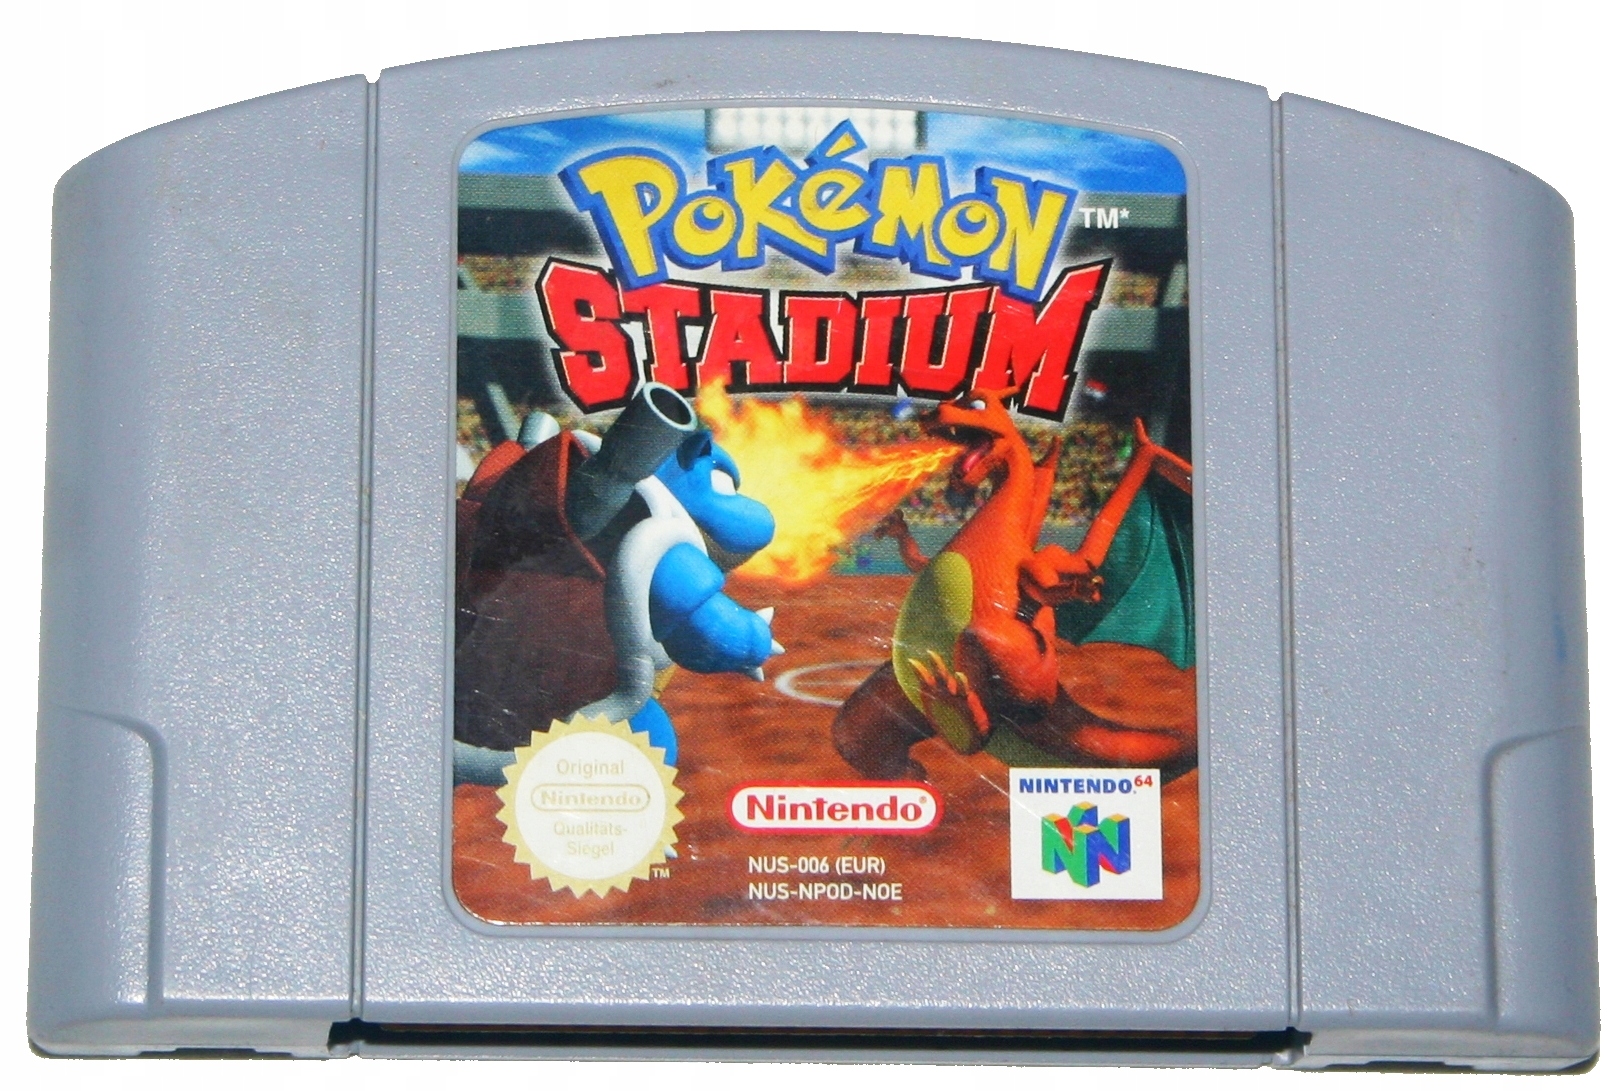 Pokémon Stadium - hra pre konzoly Nintendo 64, N64.